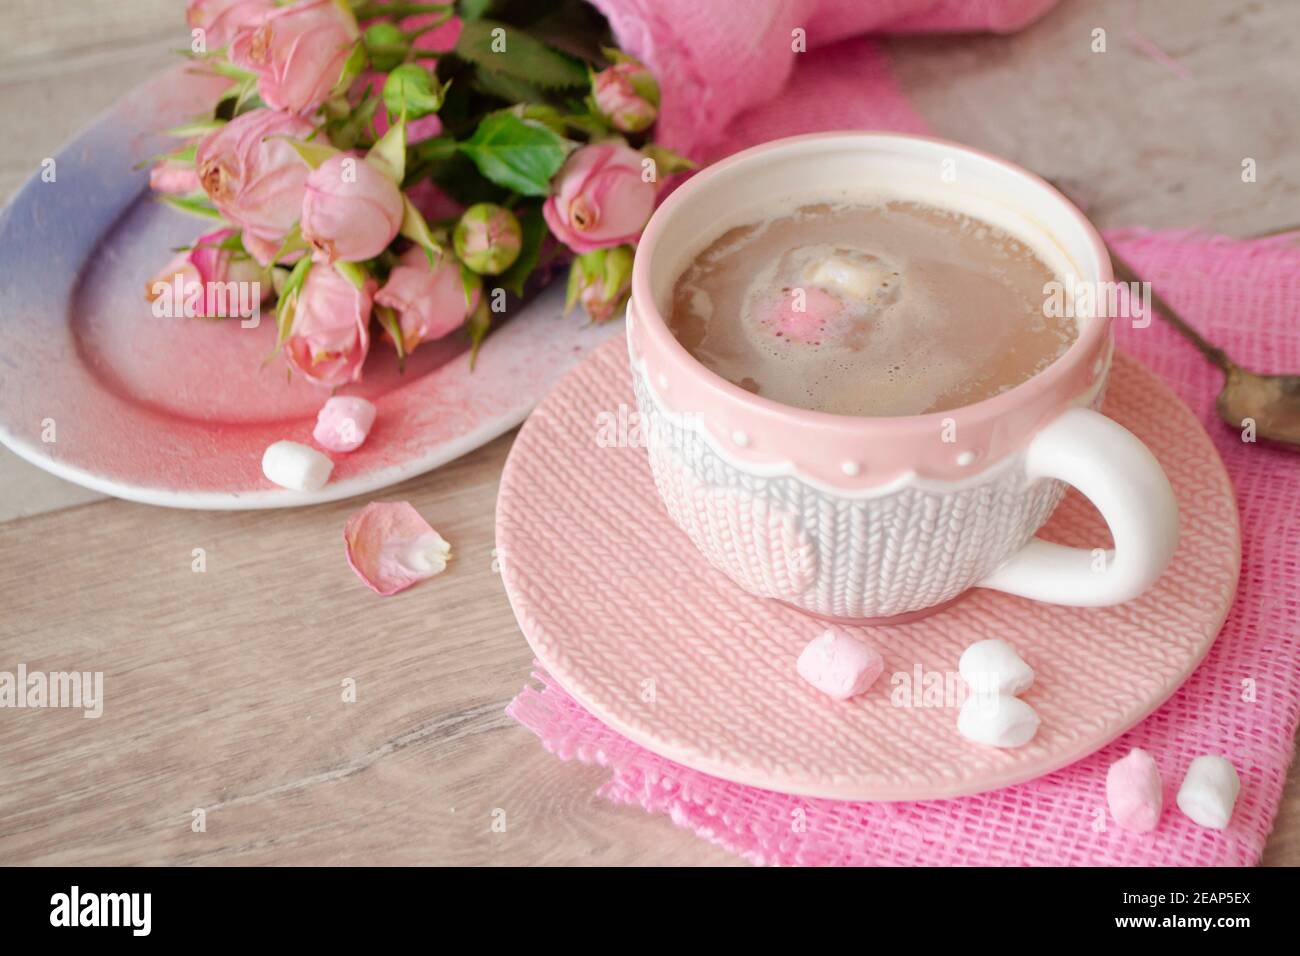 Tazza di cioccolato al cacao con bevanda calda e marshmallow bianco e rosa, cacao in tazza con rose rosa, caffetteria per le vacanze, decorazione romantica, tazza con effetto lavorato a maglia Foto Stock